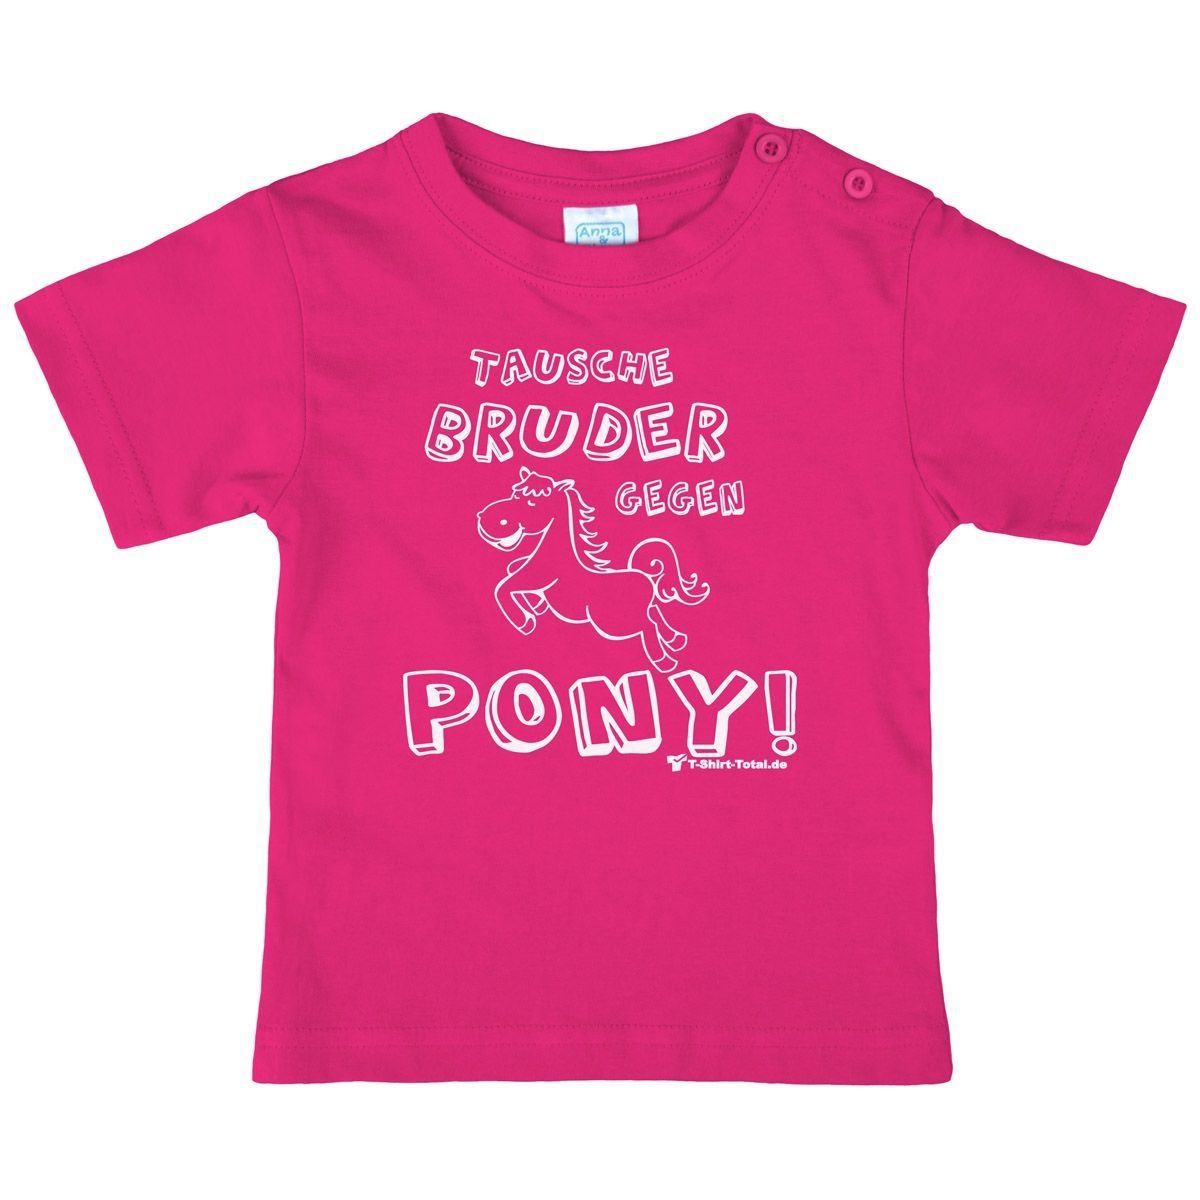 Tausche Bruder gegen Pony Kinder T-Shirt pink 80 / 86